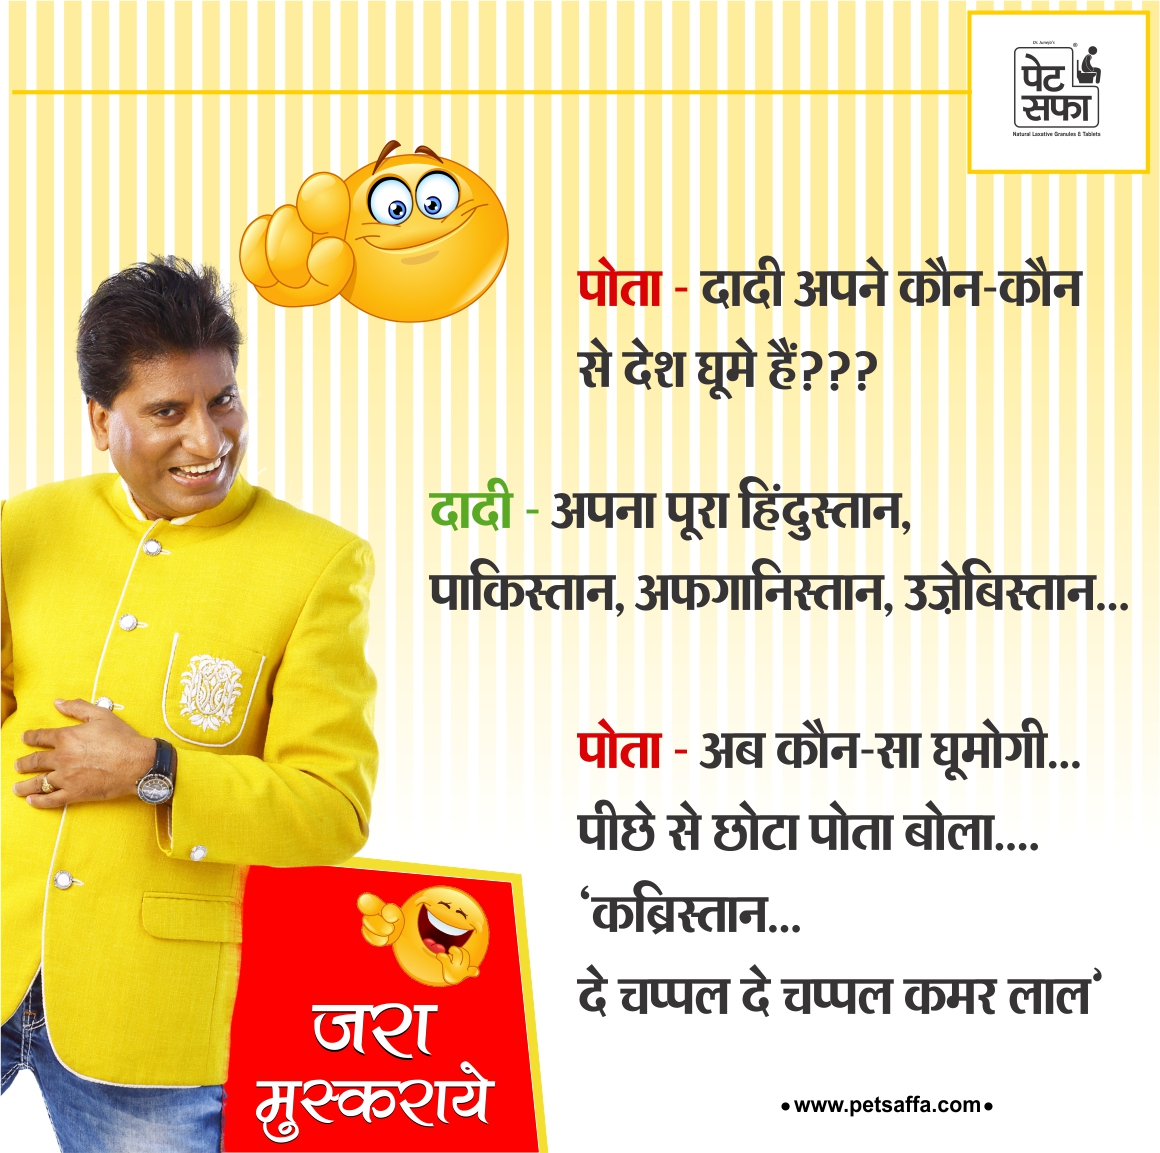 Best Hindi jokes images - Jokes of the Day